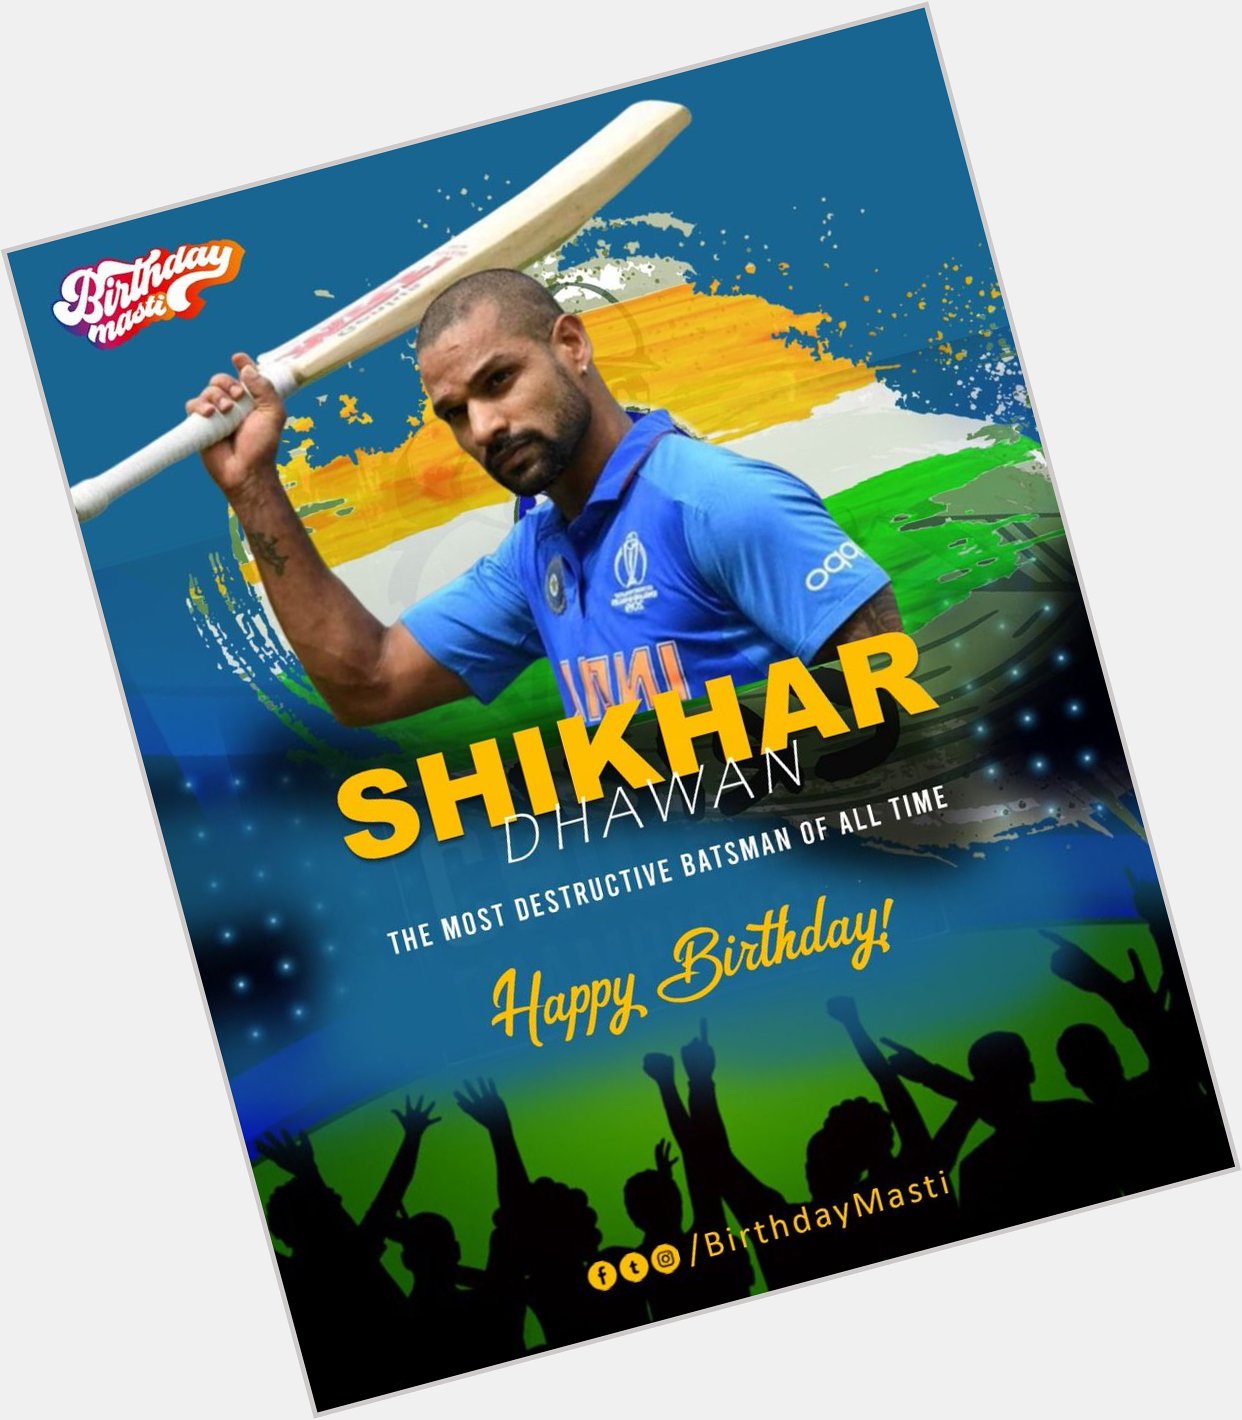  Happy birthday shikhar dhawan 